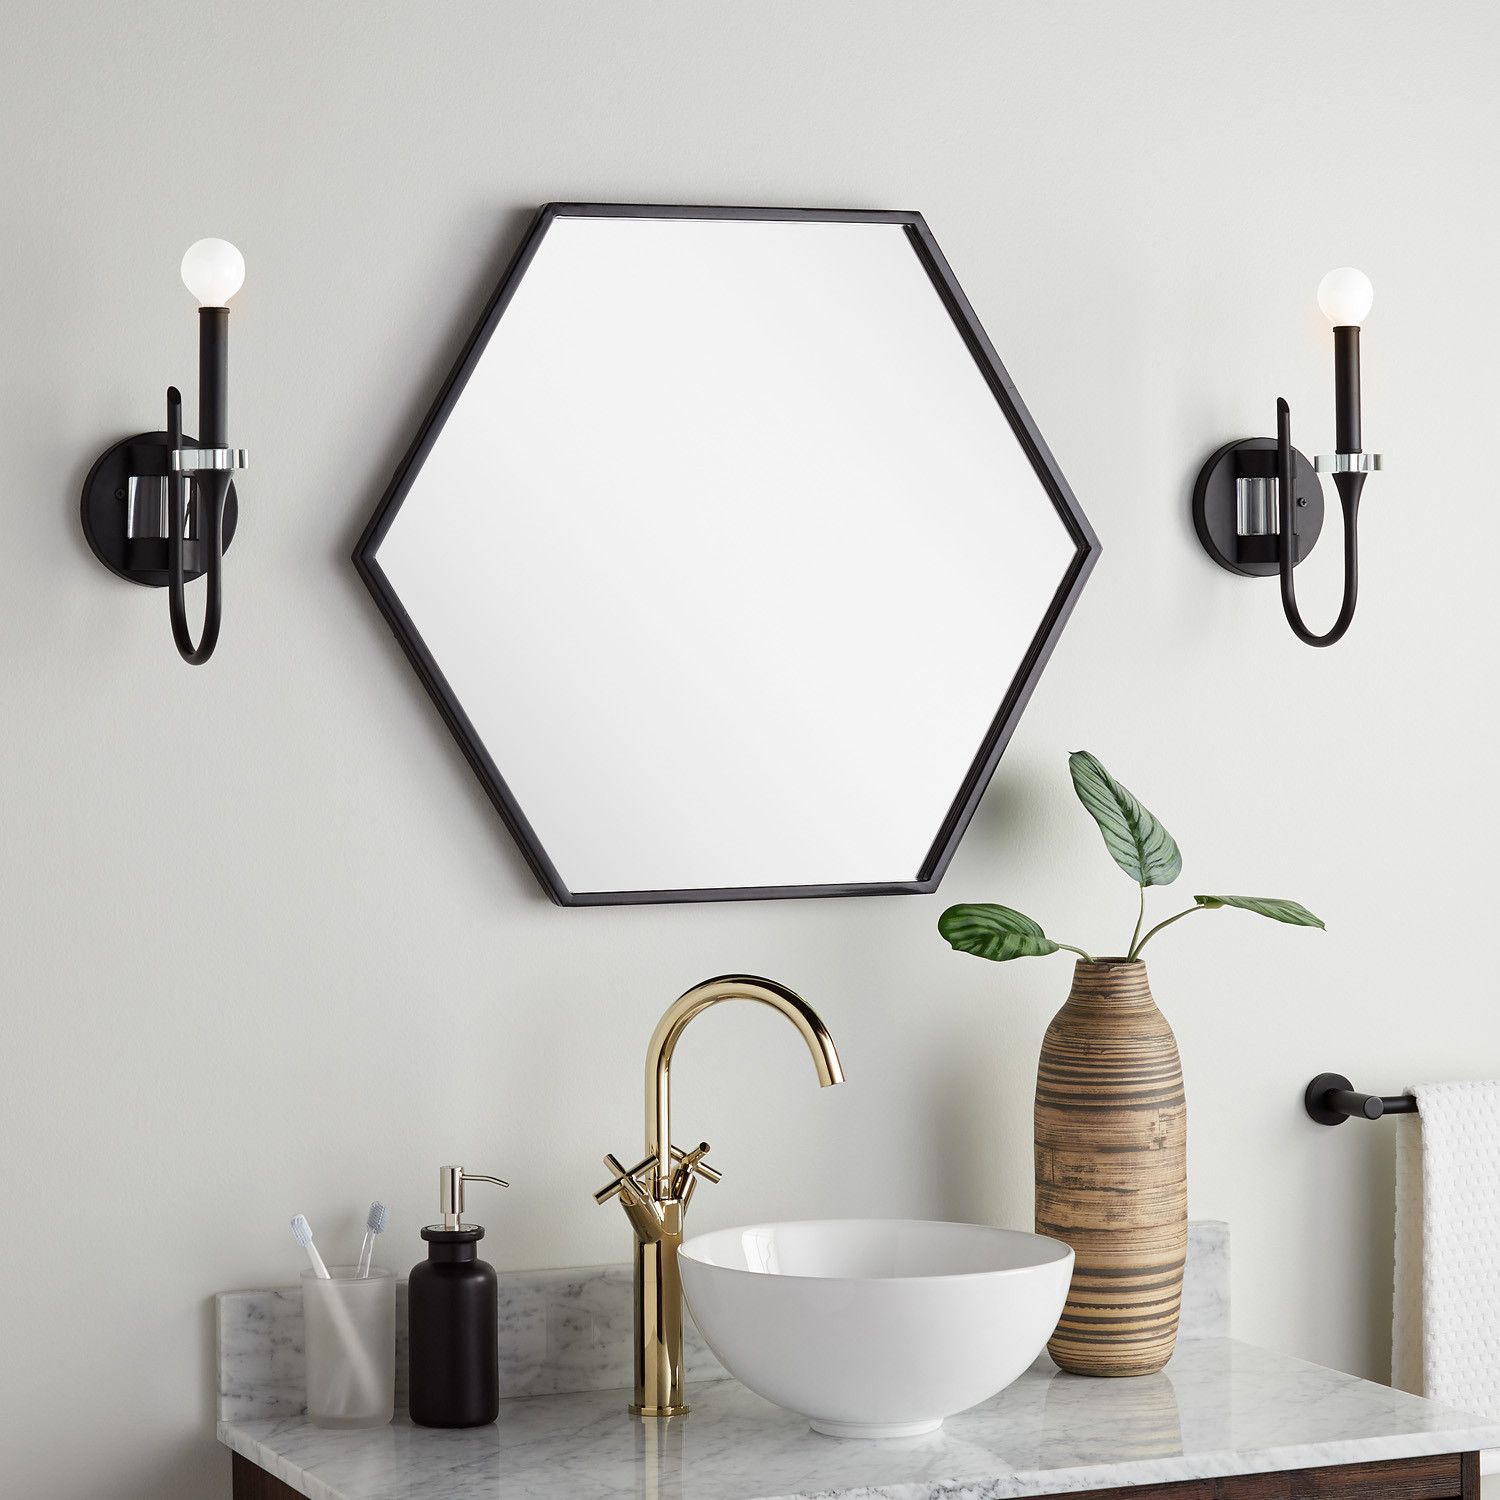 Hexagonal Mirror for Modern Accent